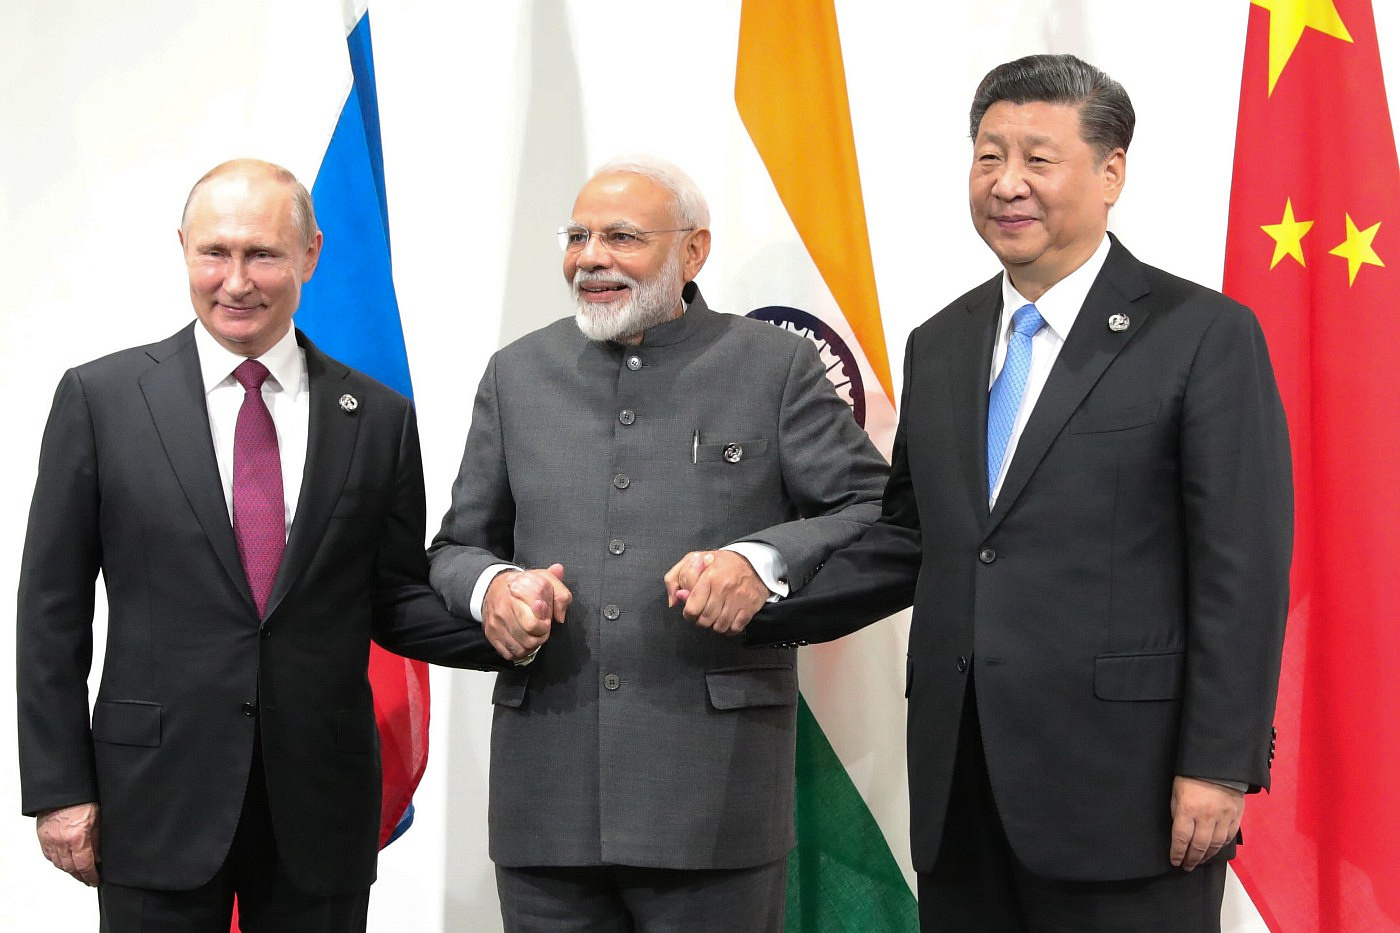 Западные санкции благоприятно сказываются на отношениях России и Азии